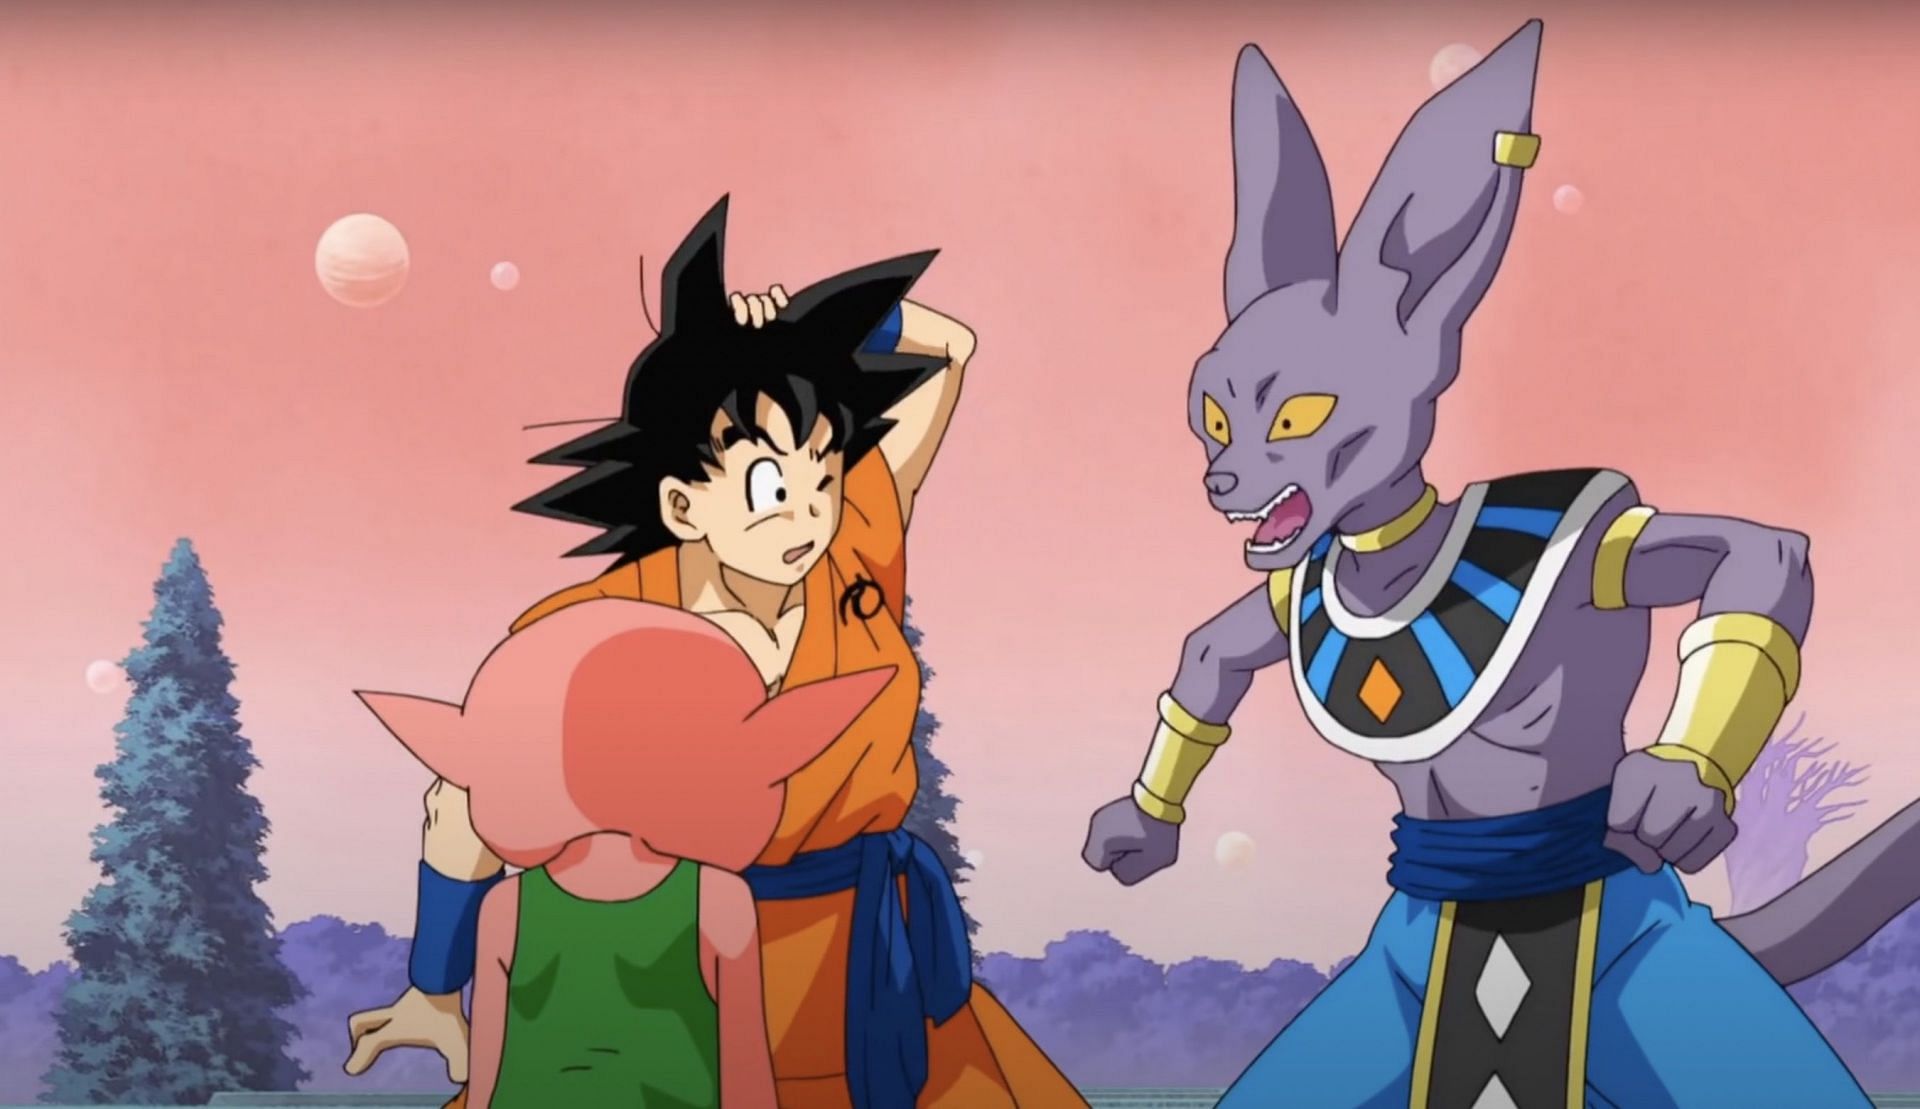 Beerus just hit Goku on the head (Image via Toei Animation)